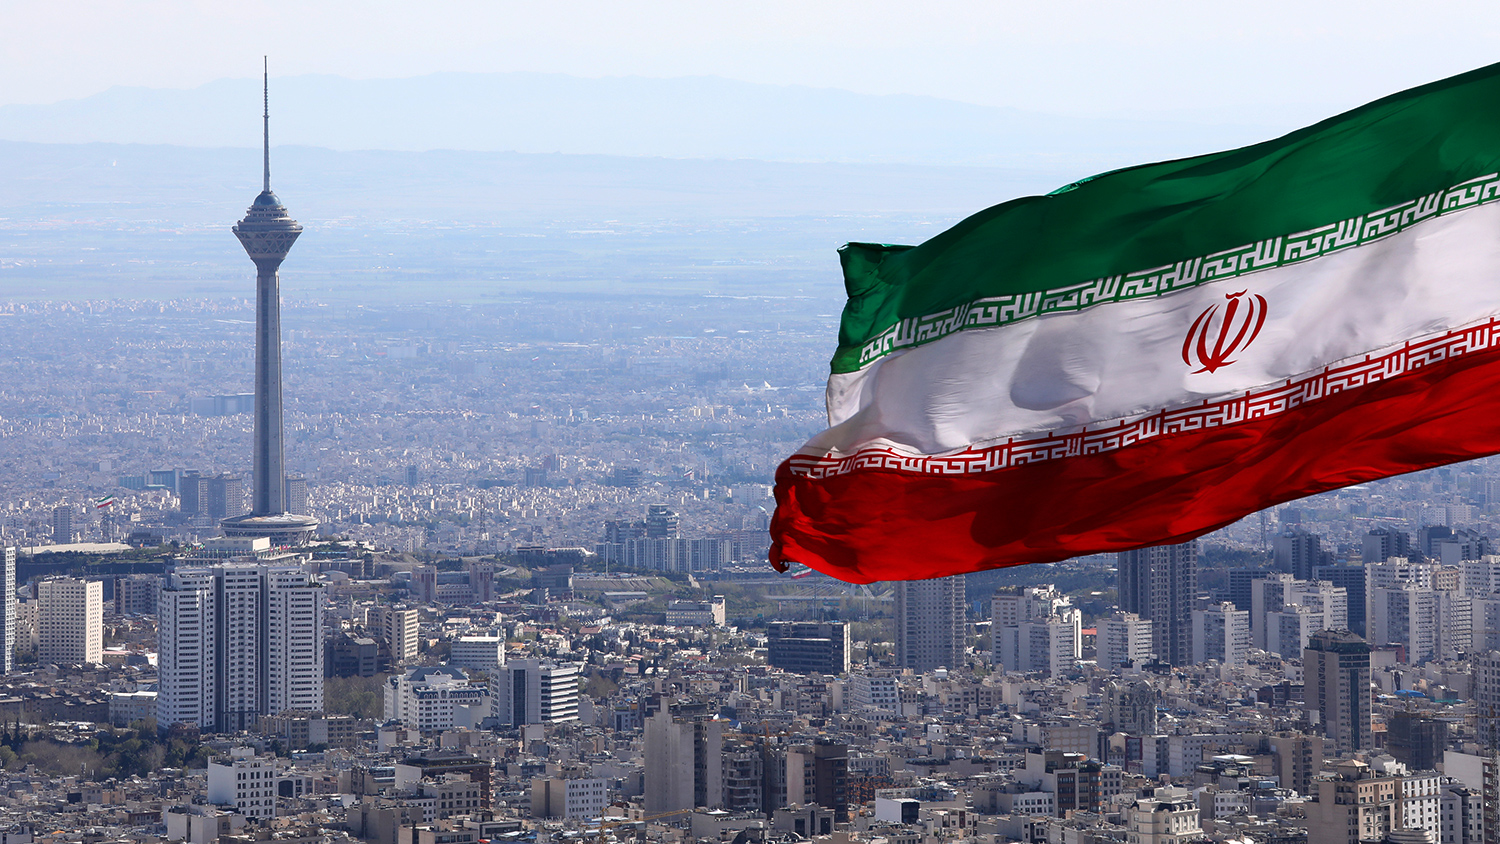 В Иране задержали организаторов убийства физика-ядерщика Фахризаде